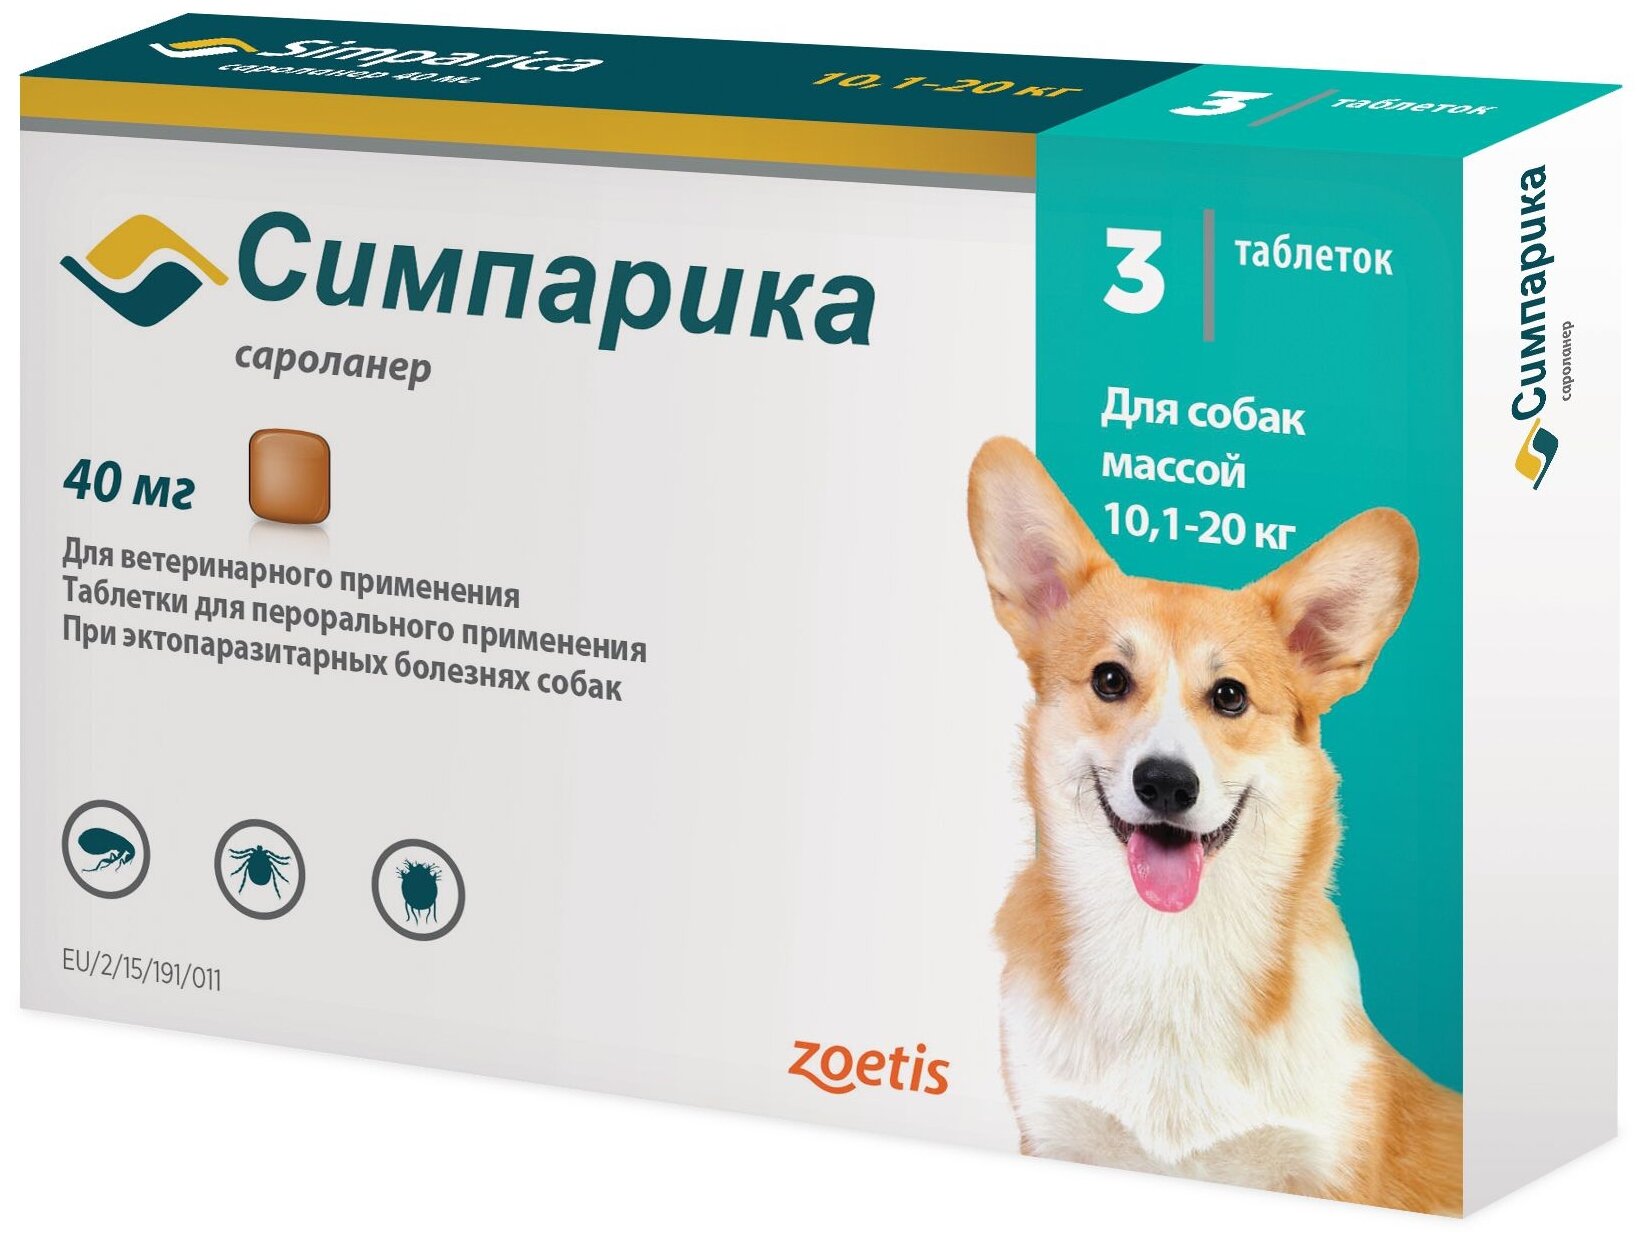 Zoetis таблетки от блох и клещей Симпарика для собак и щенков массой 10,1-20,0 кг — купить по выгодной цене на Яндекс Маркете